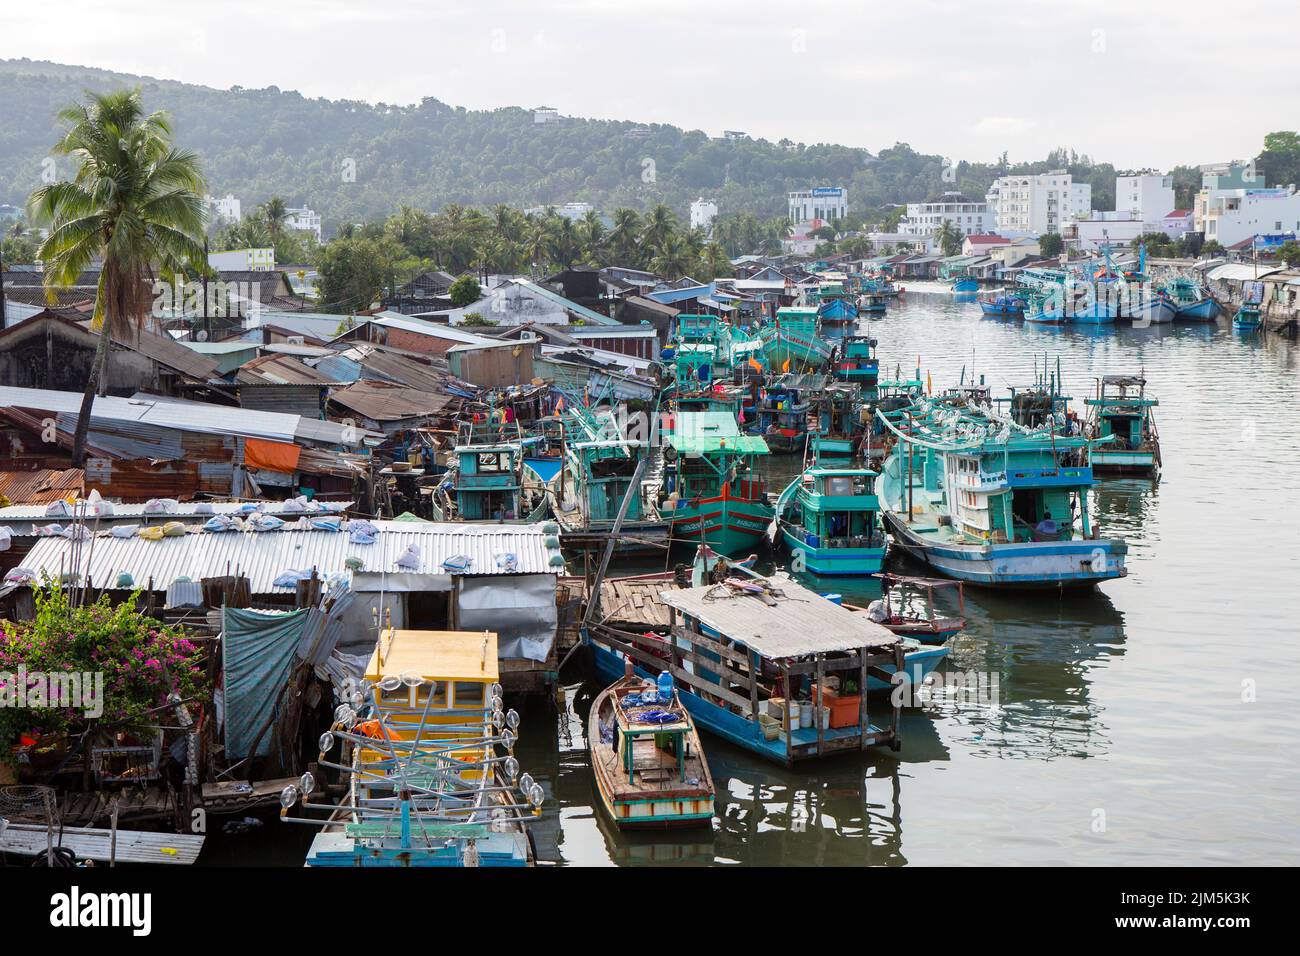 Phu Quoc, Vietnam - 25 de enero de 2018: Barcos de pesca vietnamitas en el río Duong Dong ubicado en la ciudad de Duong Dong en la isla Phu Quoc, Vietnam. Foto de stock